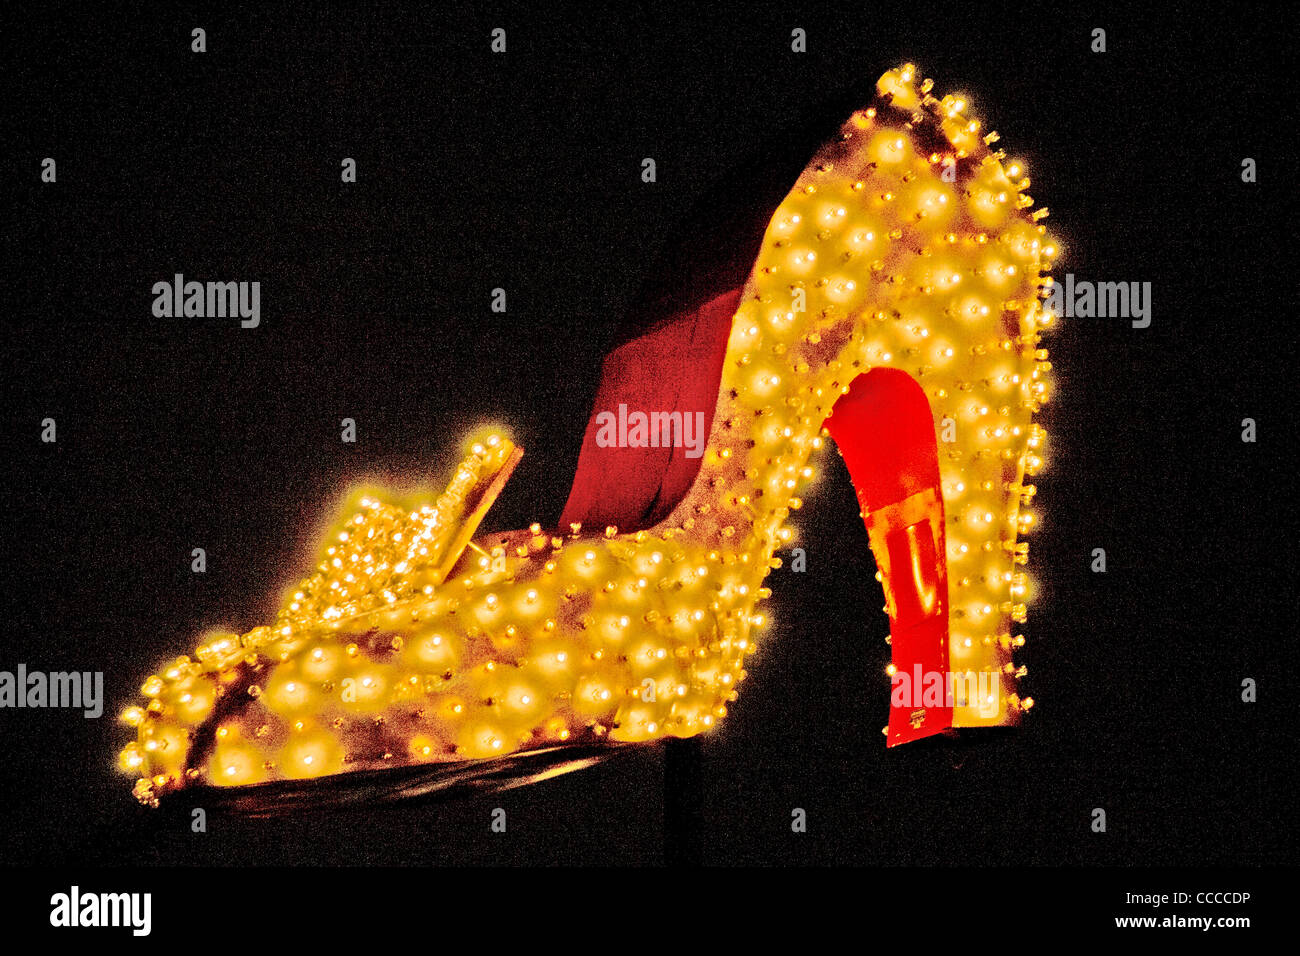 Un géant allumé high heel shoe décore Las Vegas Boulevard, à Las Vegas, NV, dans le cadre de la 'Neon Boneyard Park'. Banque D'Images